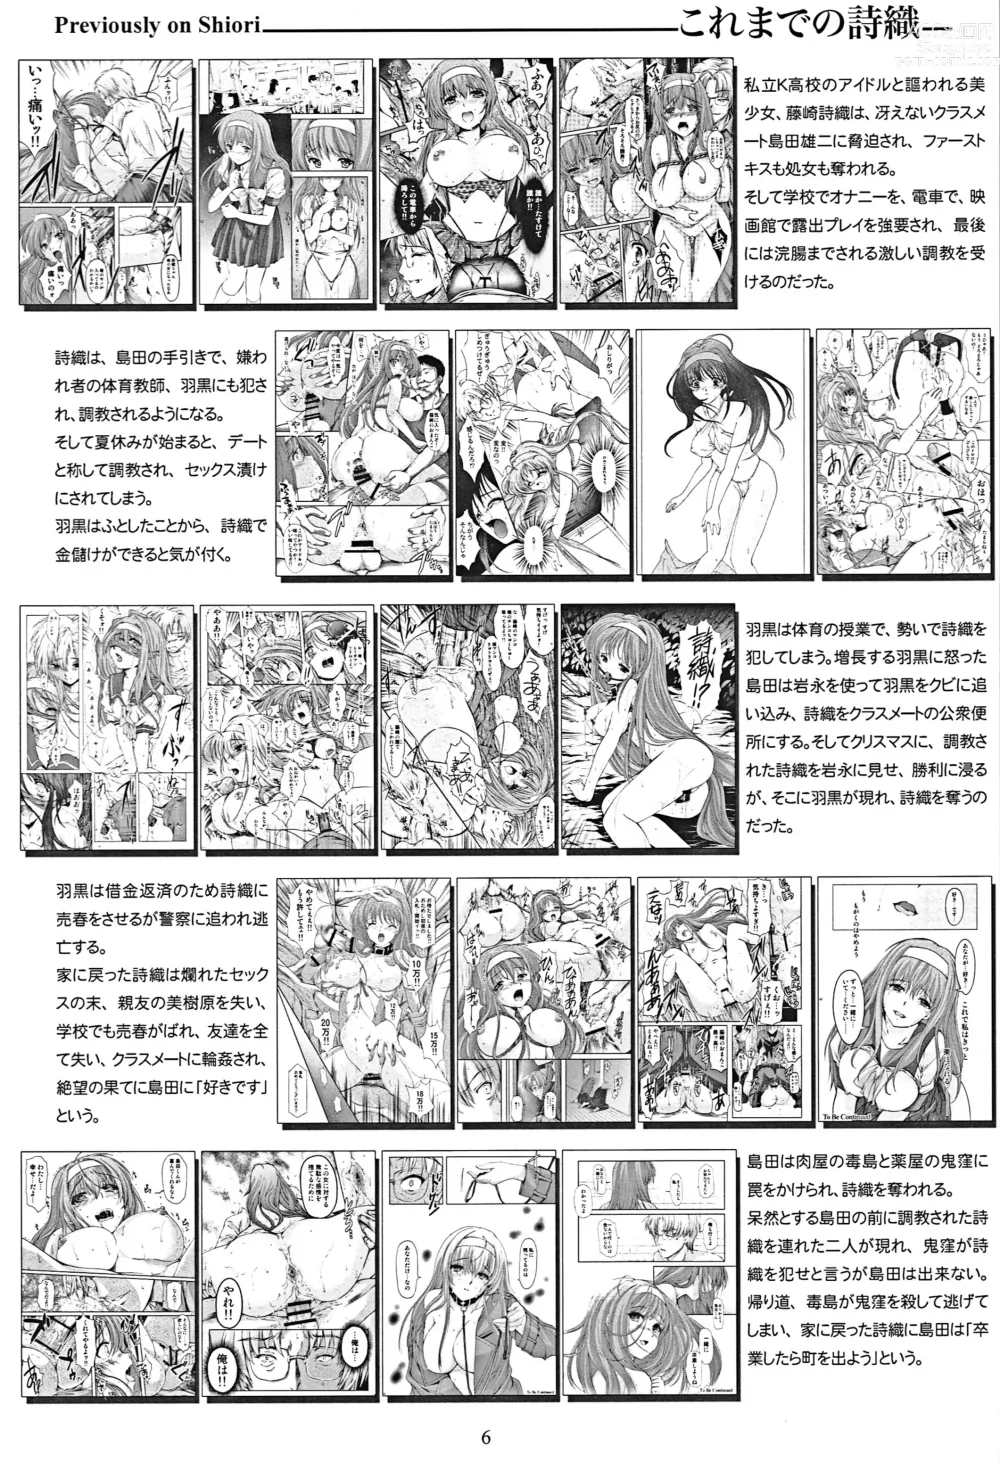 Page 5 of doujinshi Shiori Dai-Nijuunana-Shou Kago no Naka no Melancholic - Shiori Volume 27 The Melancholic In The Cage